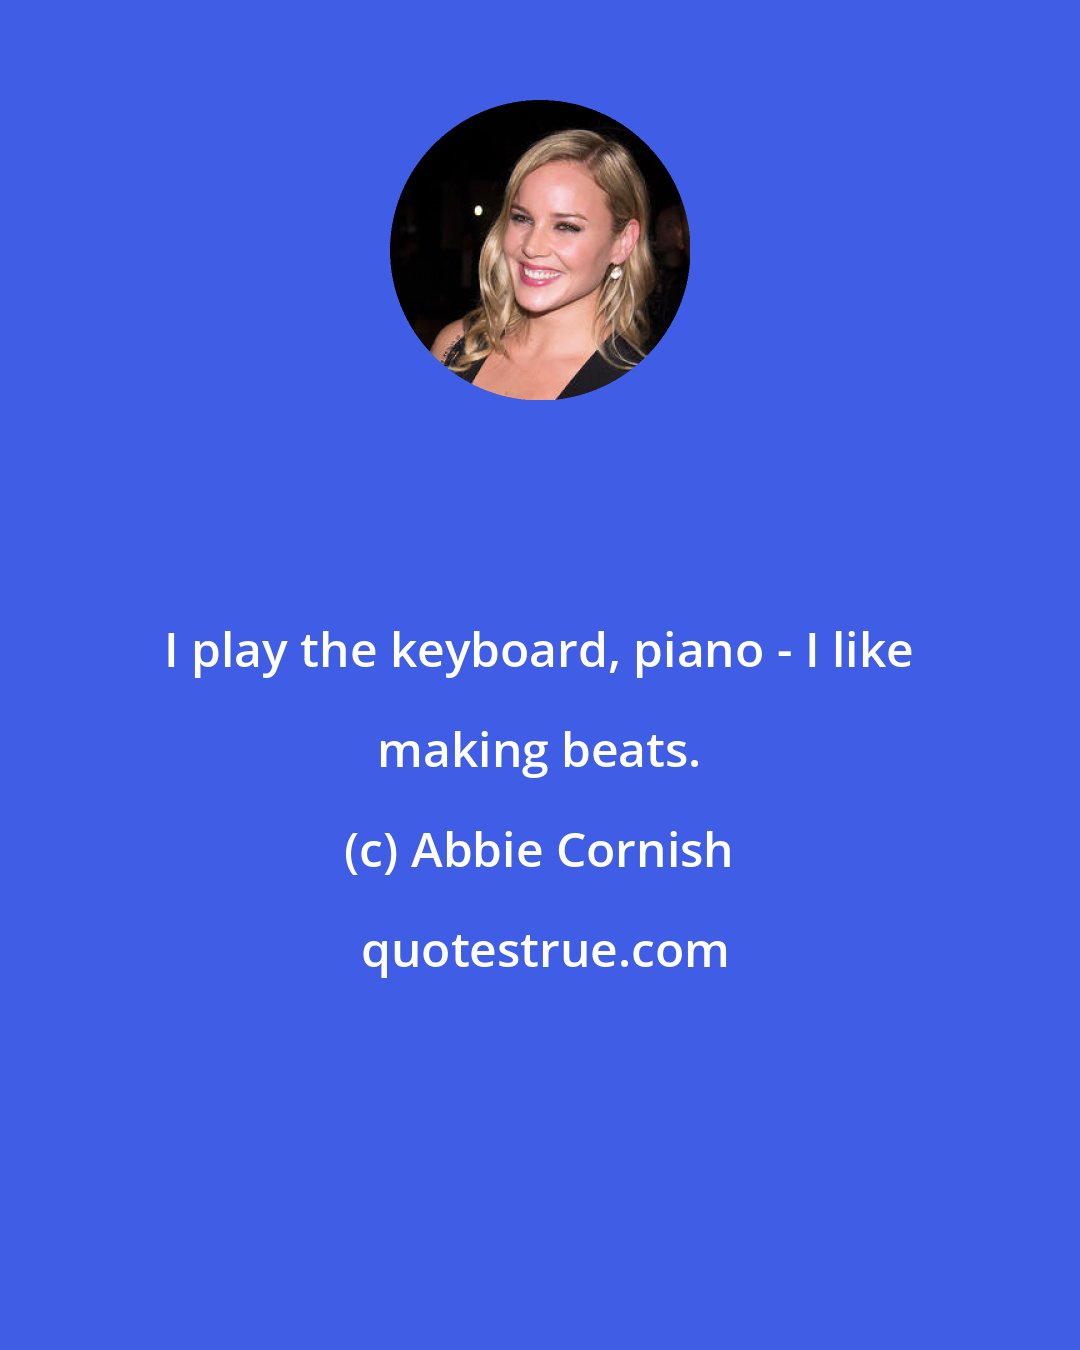 Abbie Cornish: I play the keyboard, piano - I like making beats.